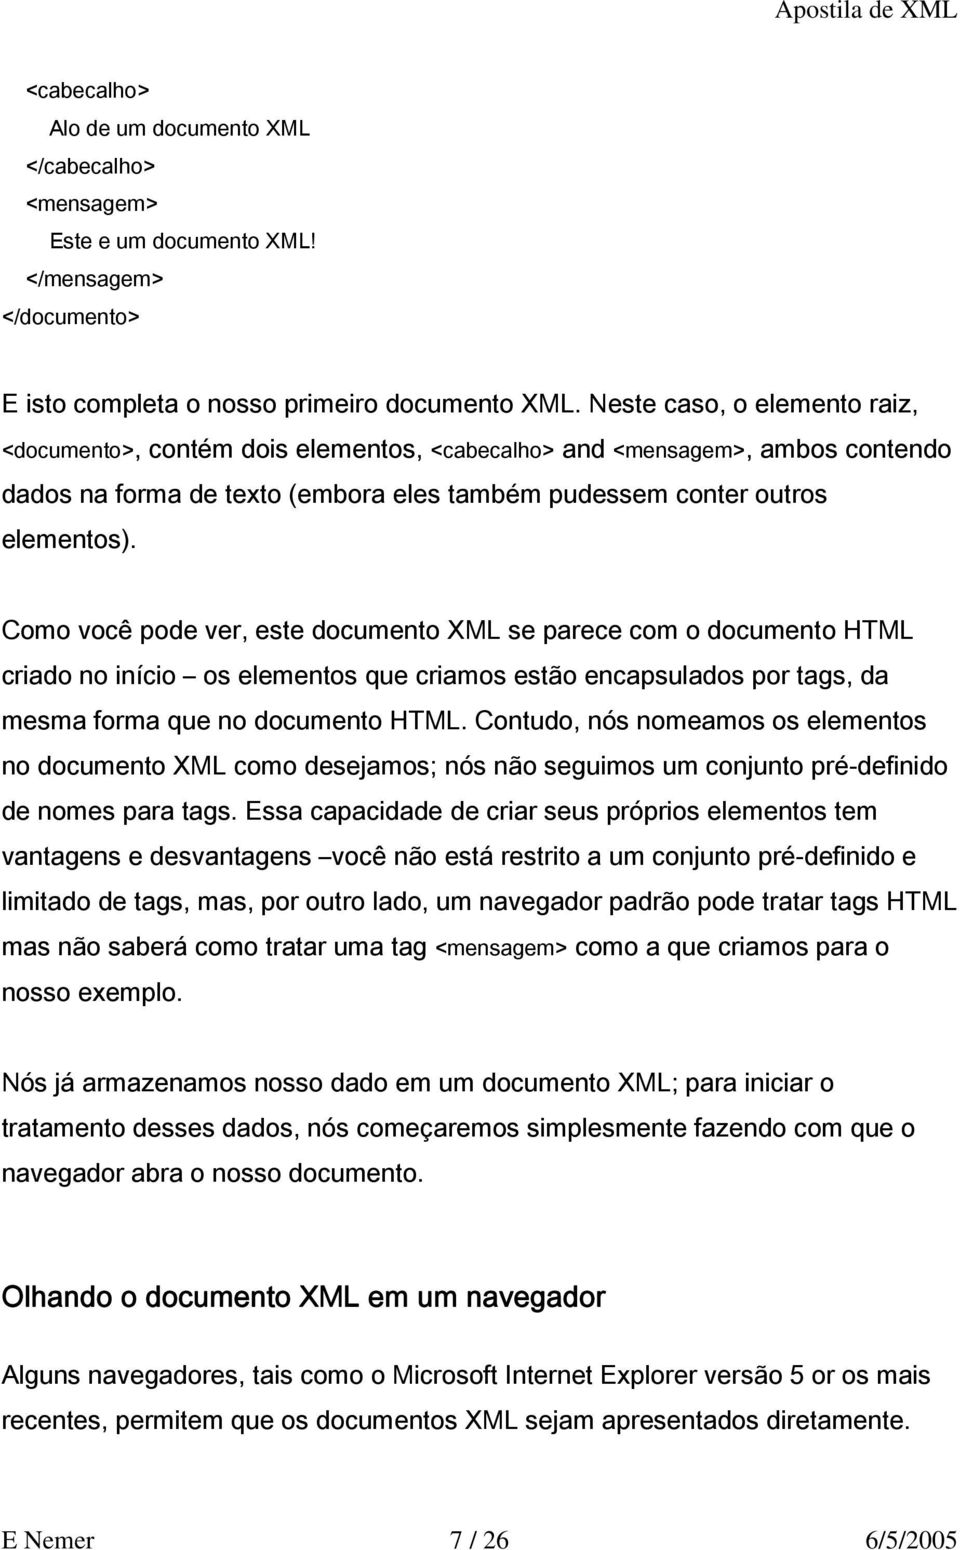 Como você pode ver, este documento XML se parece com o documento HTML criado no início os elementos que criamos estão encapsulados por tags, da mesma forma que no documento HTML.